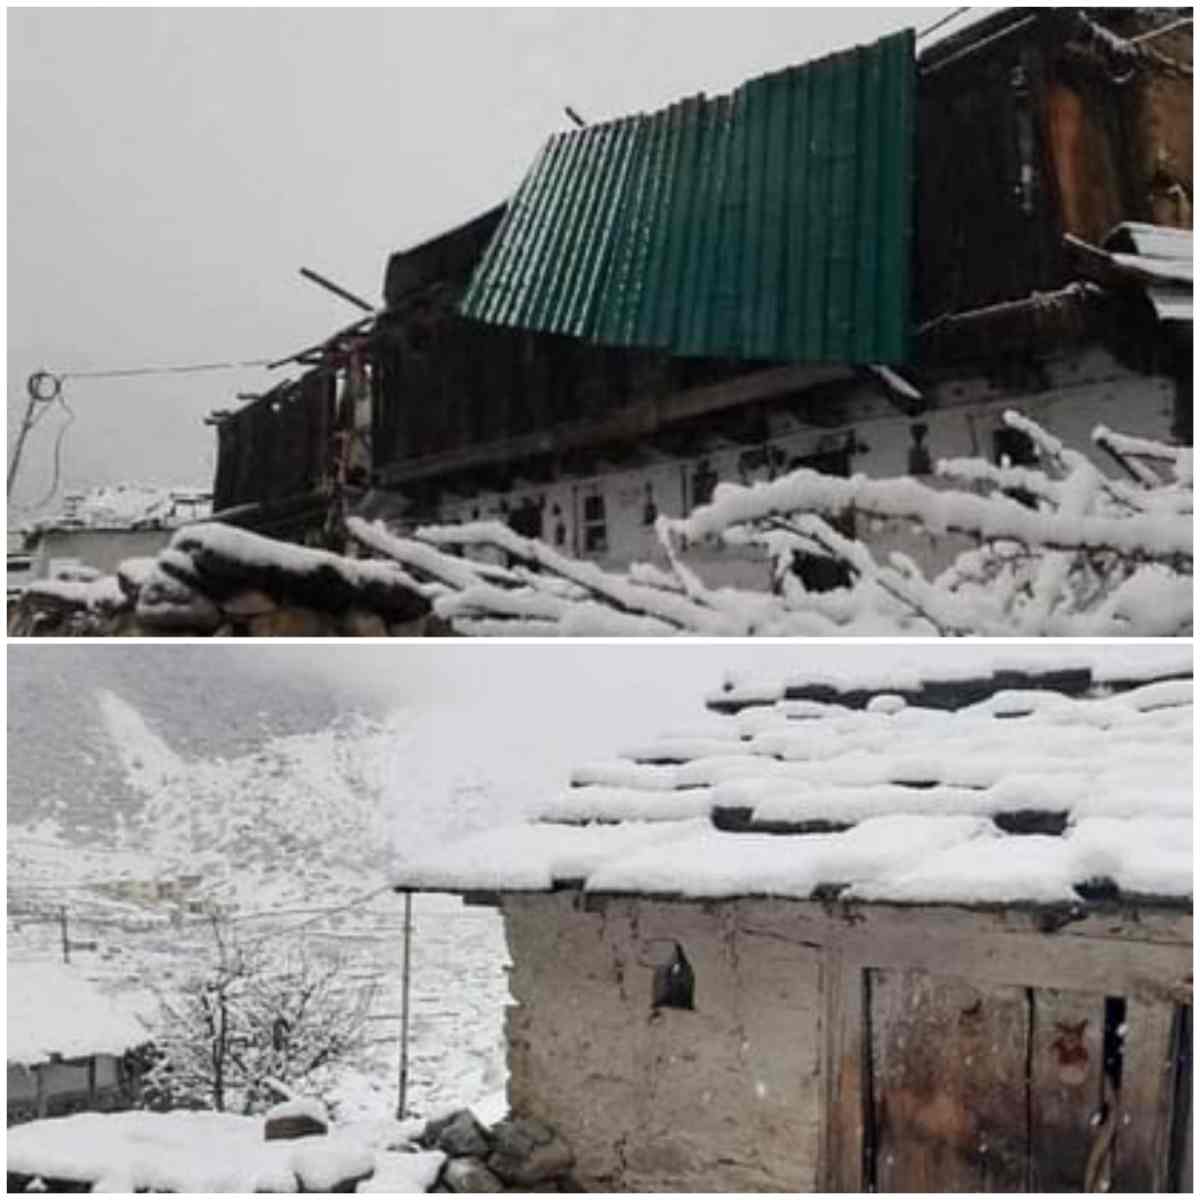 चमोली जिले के द्रोणागिरी में भारी हिमपात, हवा से घरों की छतें उड़ी